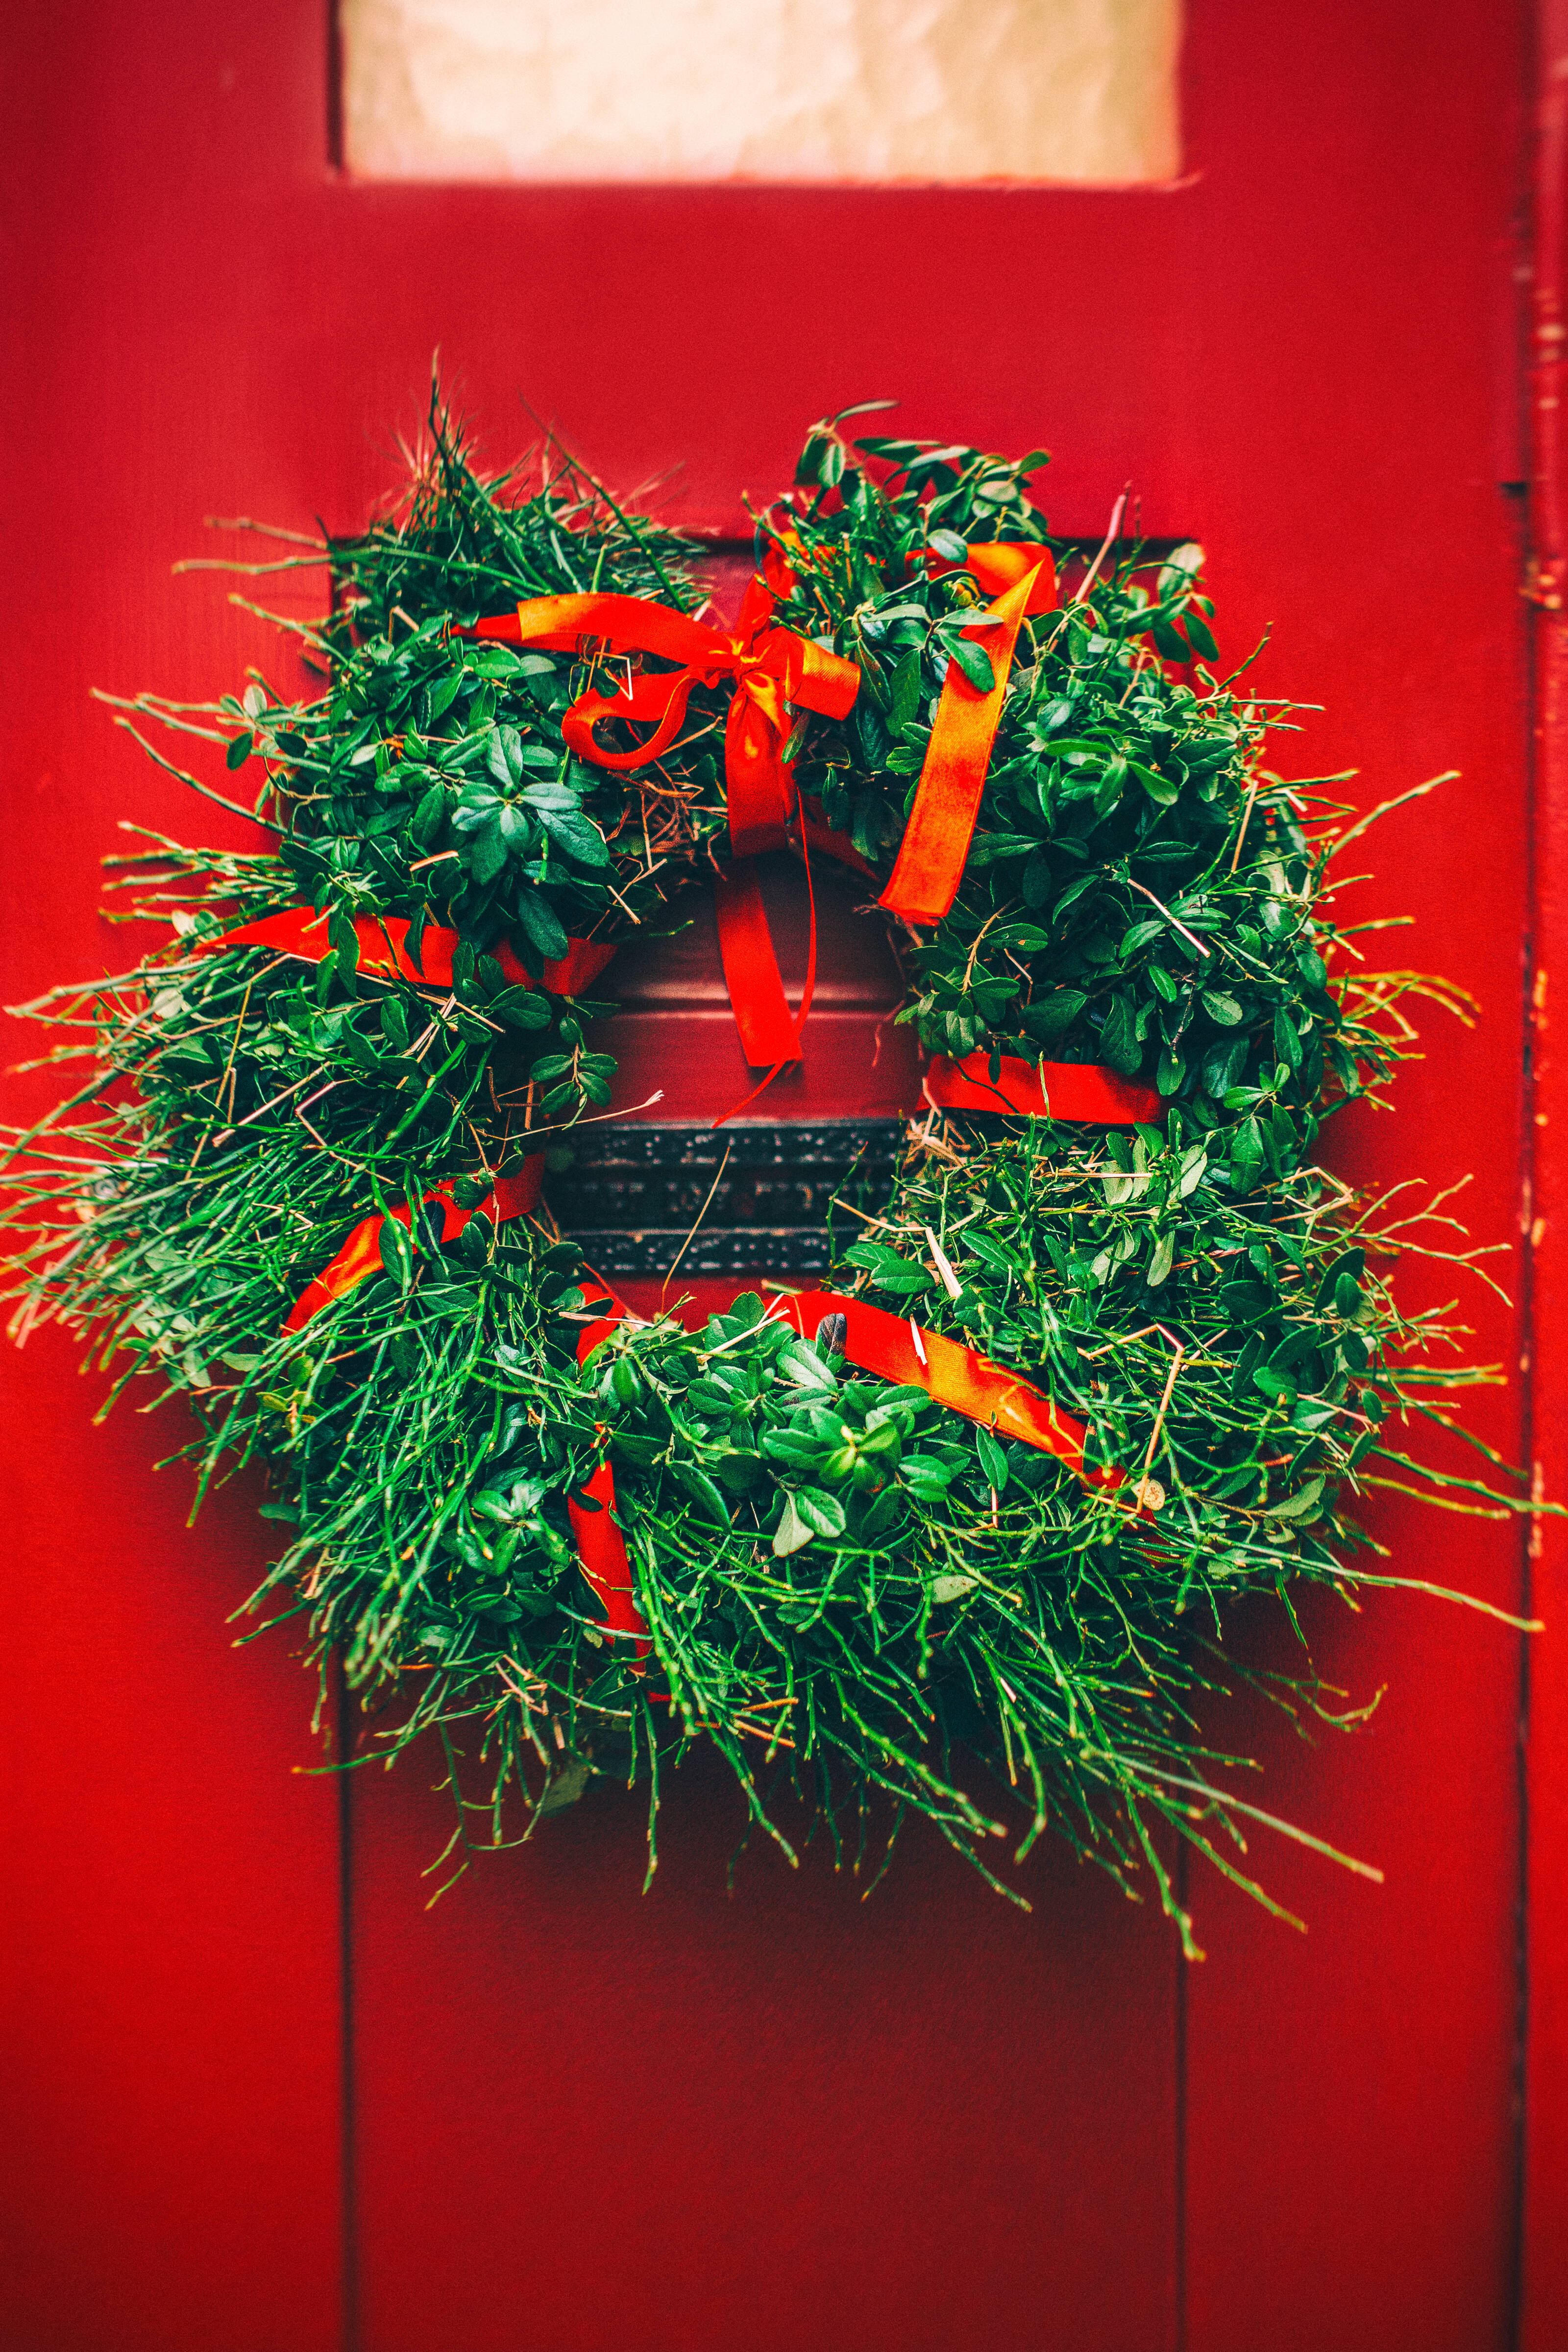 a Christmas door wreath